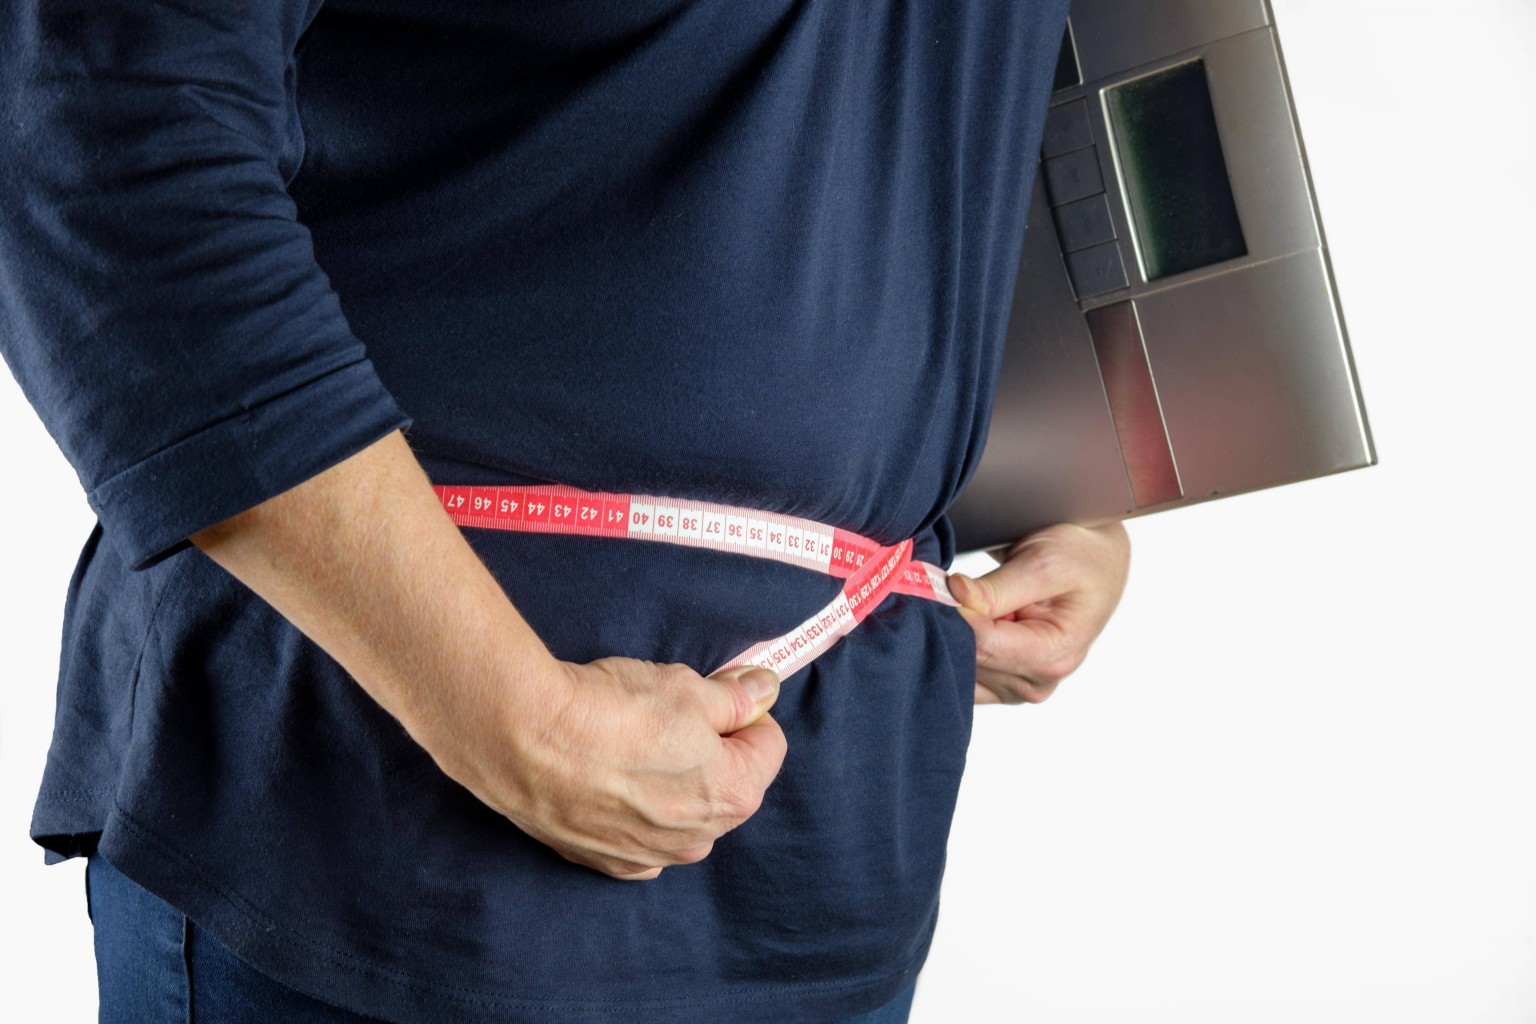 Gluten y sobrepeso:  ¿mito o realidad?